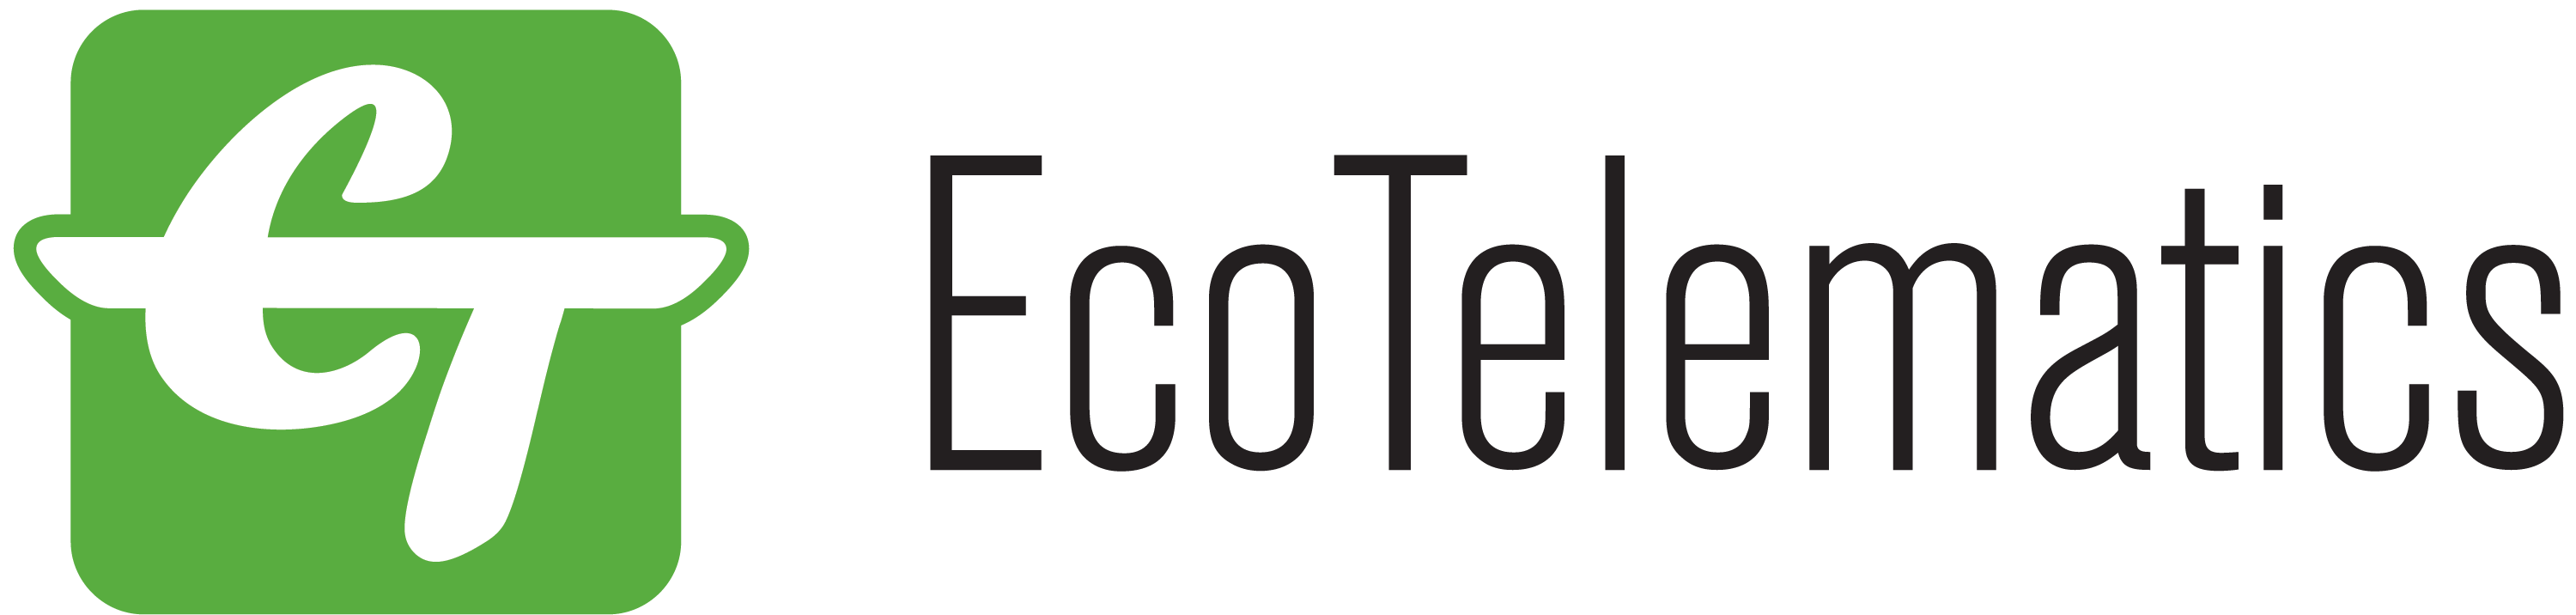 Eco Telematics DEAC